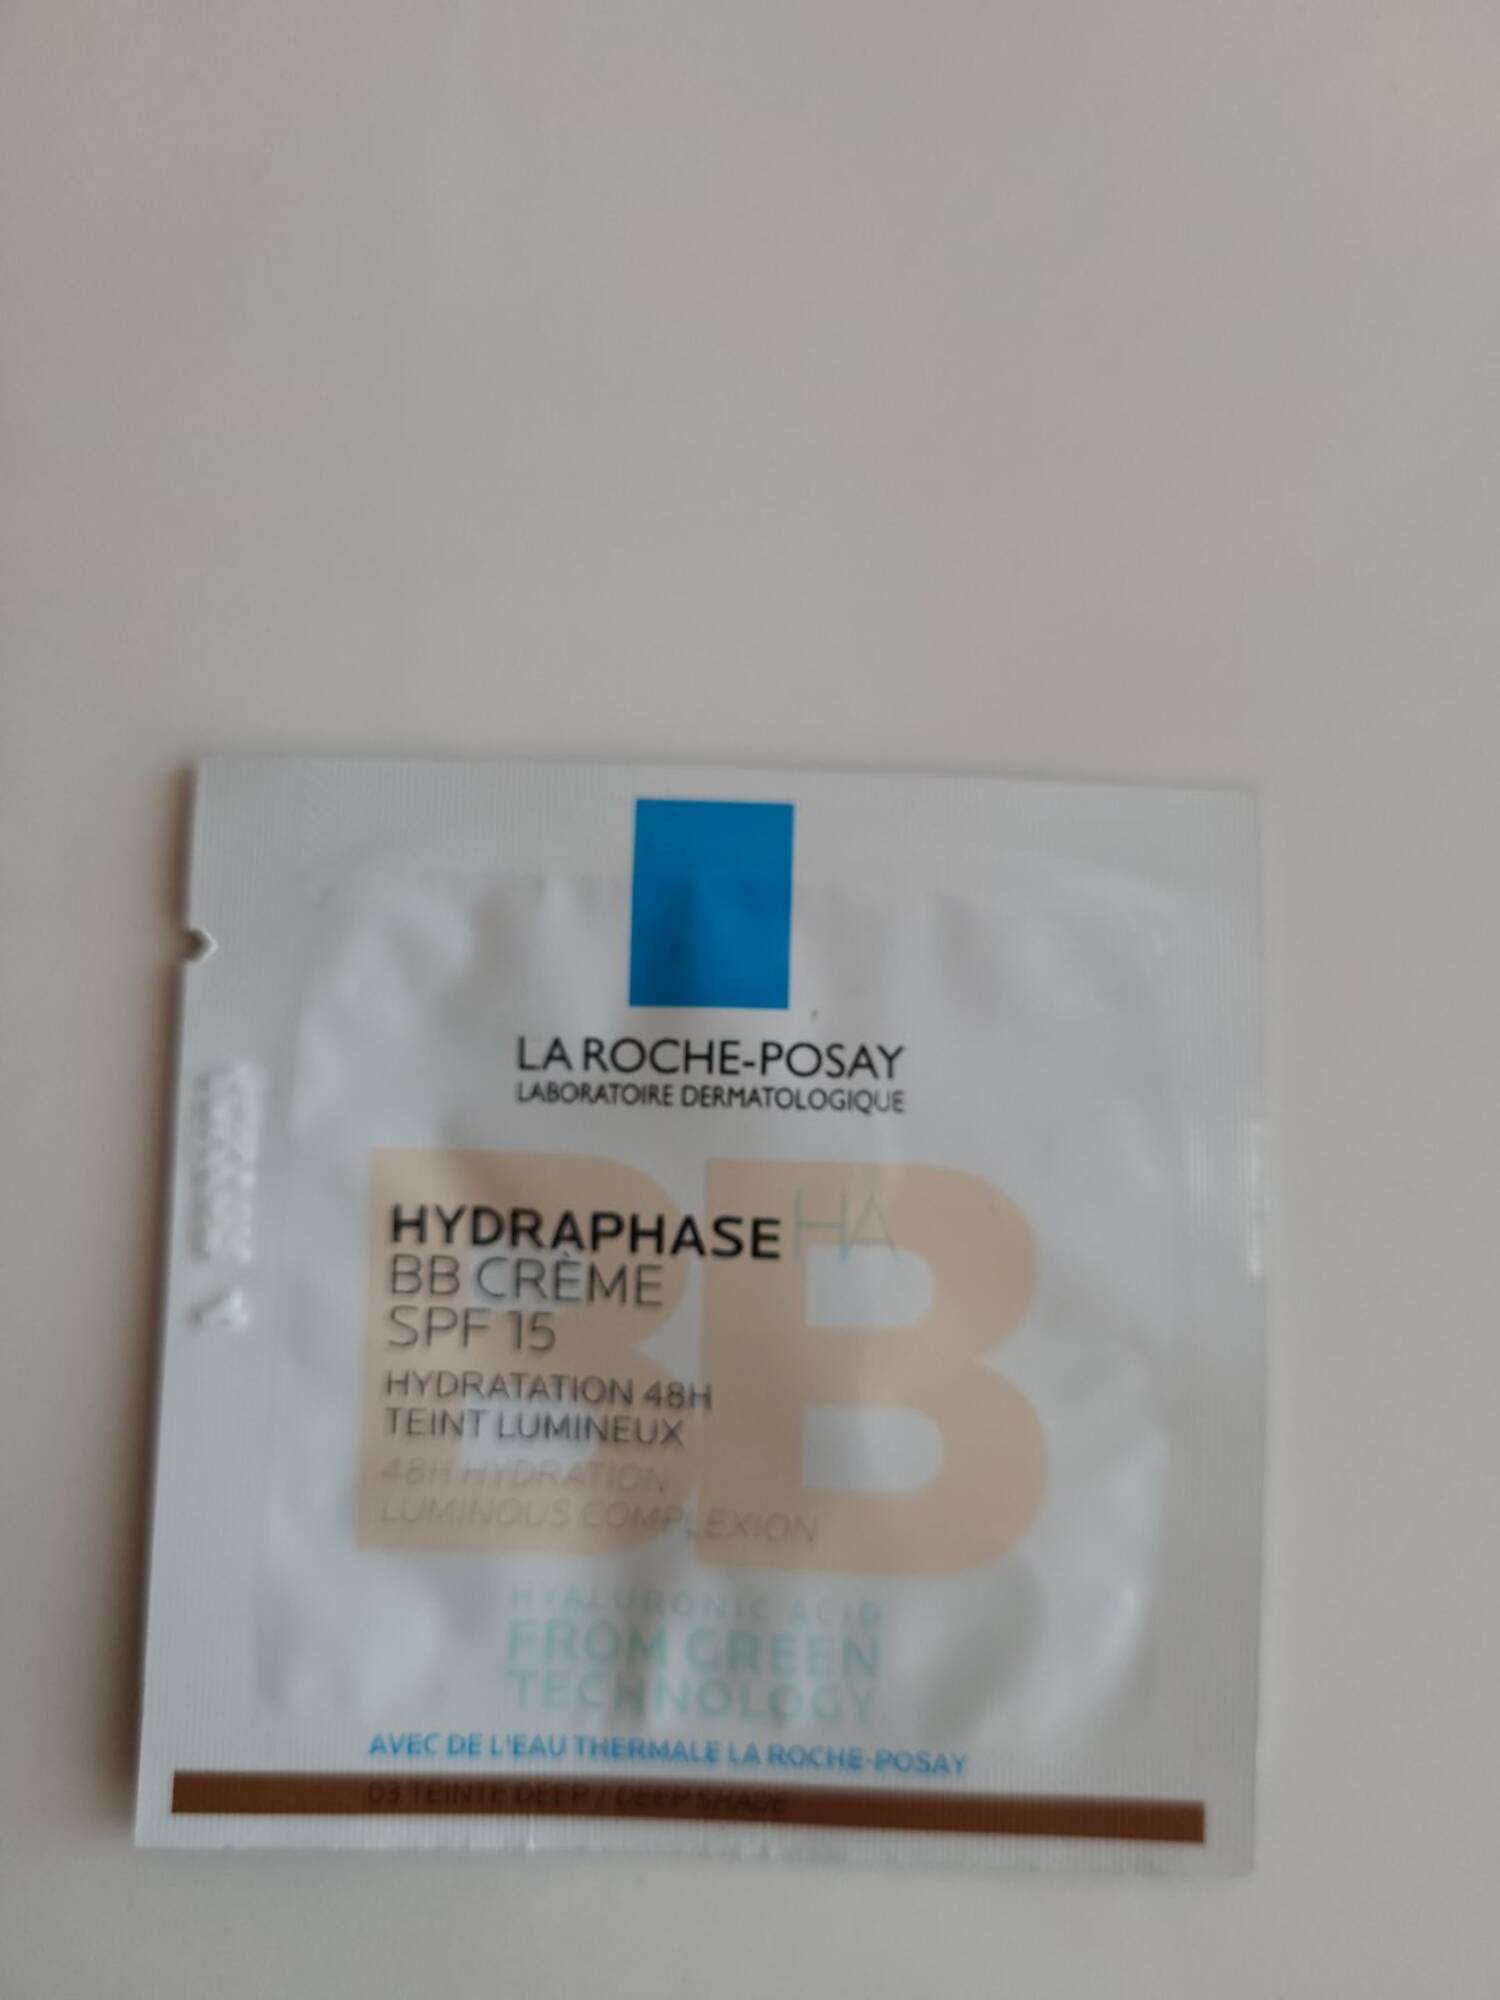 LA ROCHE-POSAY - Hydraphase - BB crème SPF 15